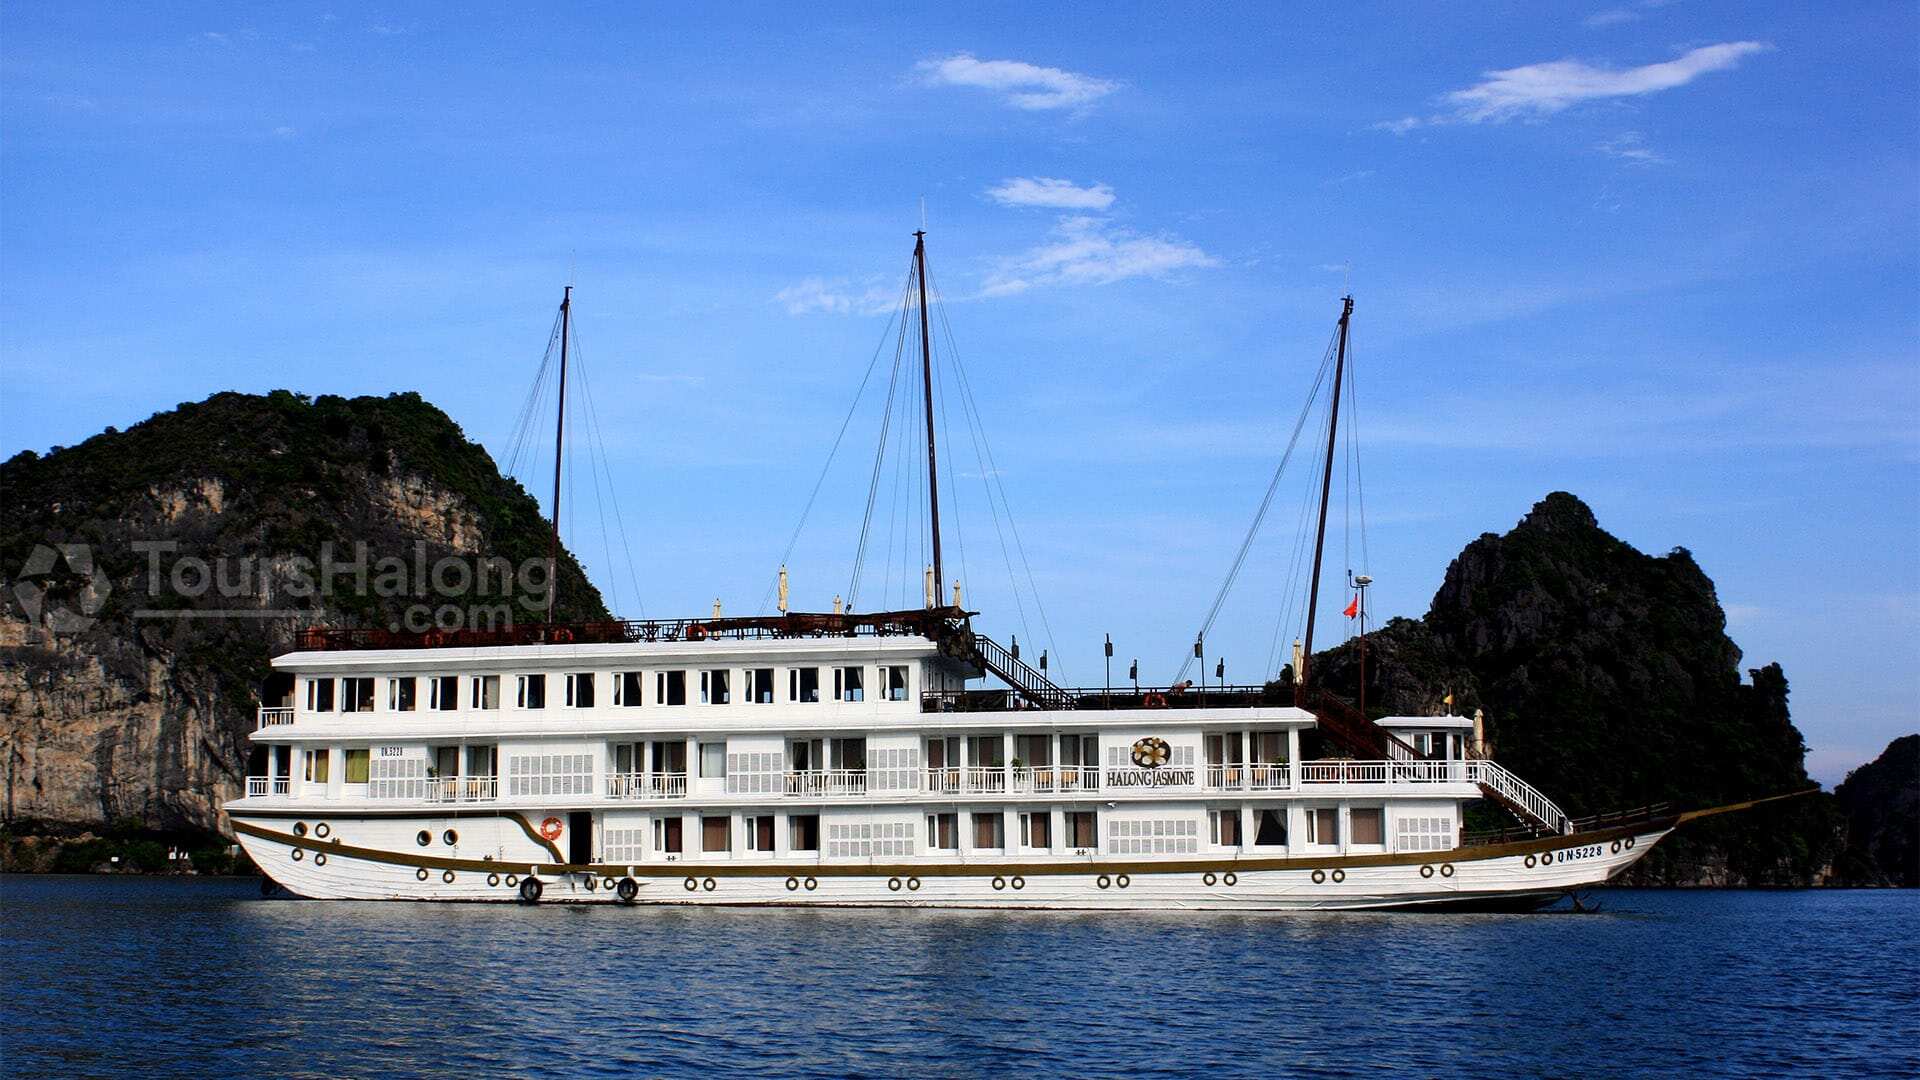 Heritage Line Jasmine Cruise Halong Bay